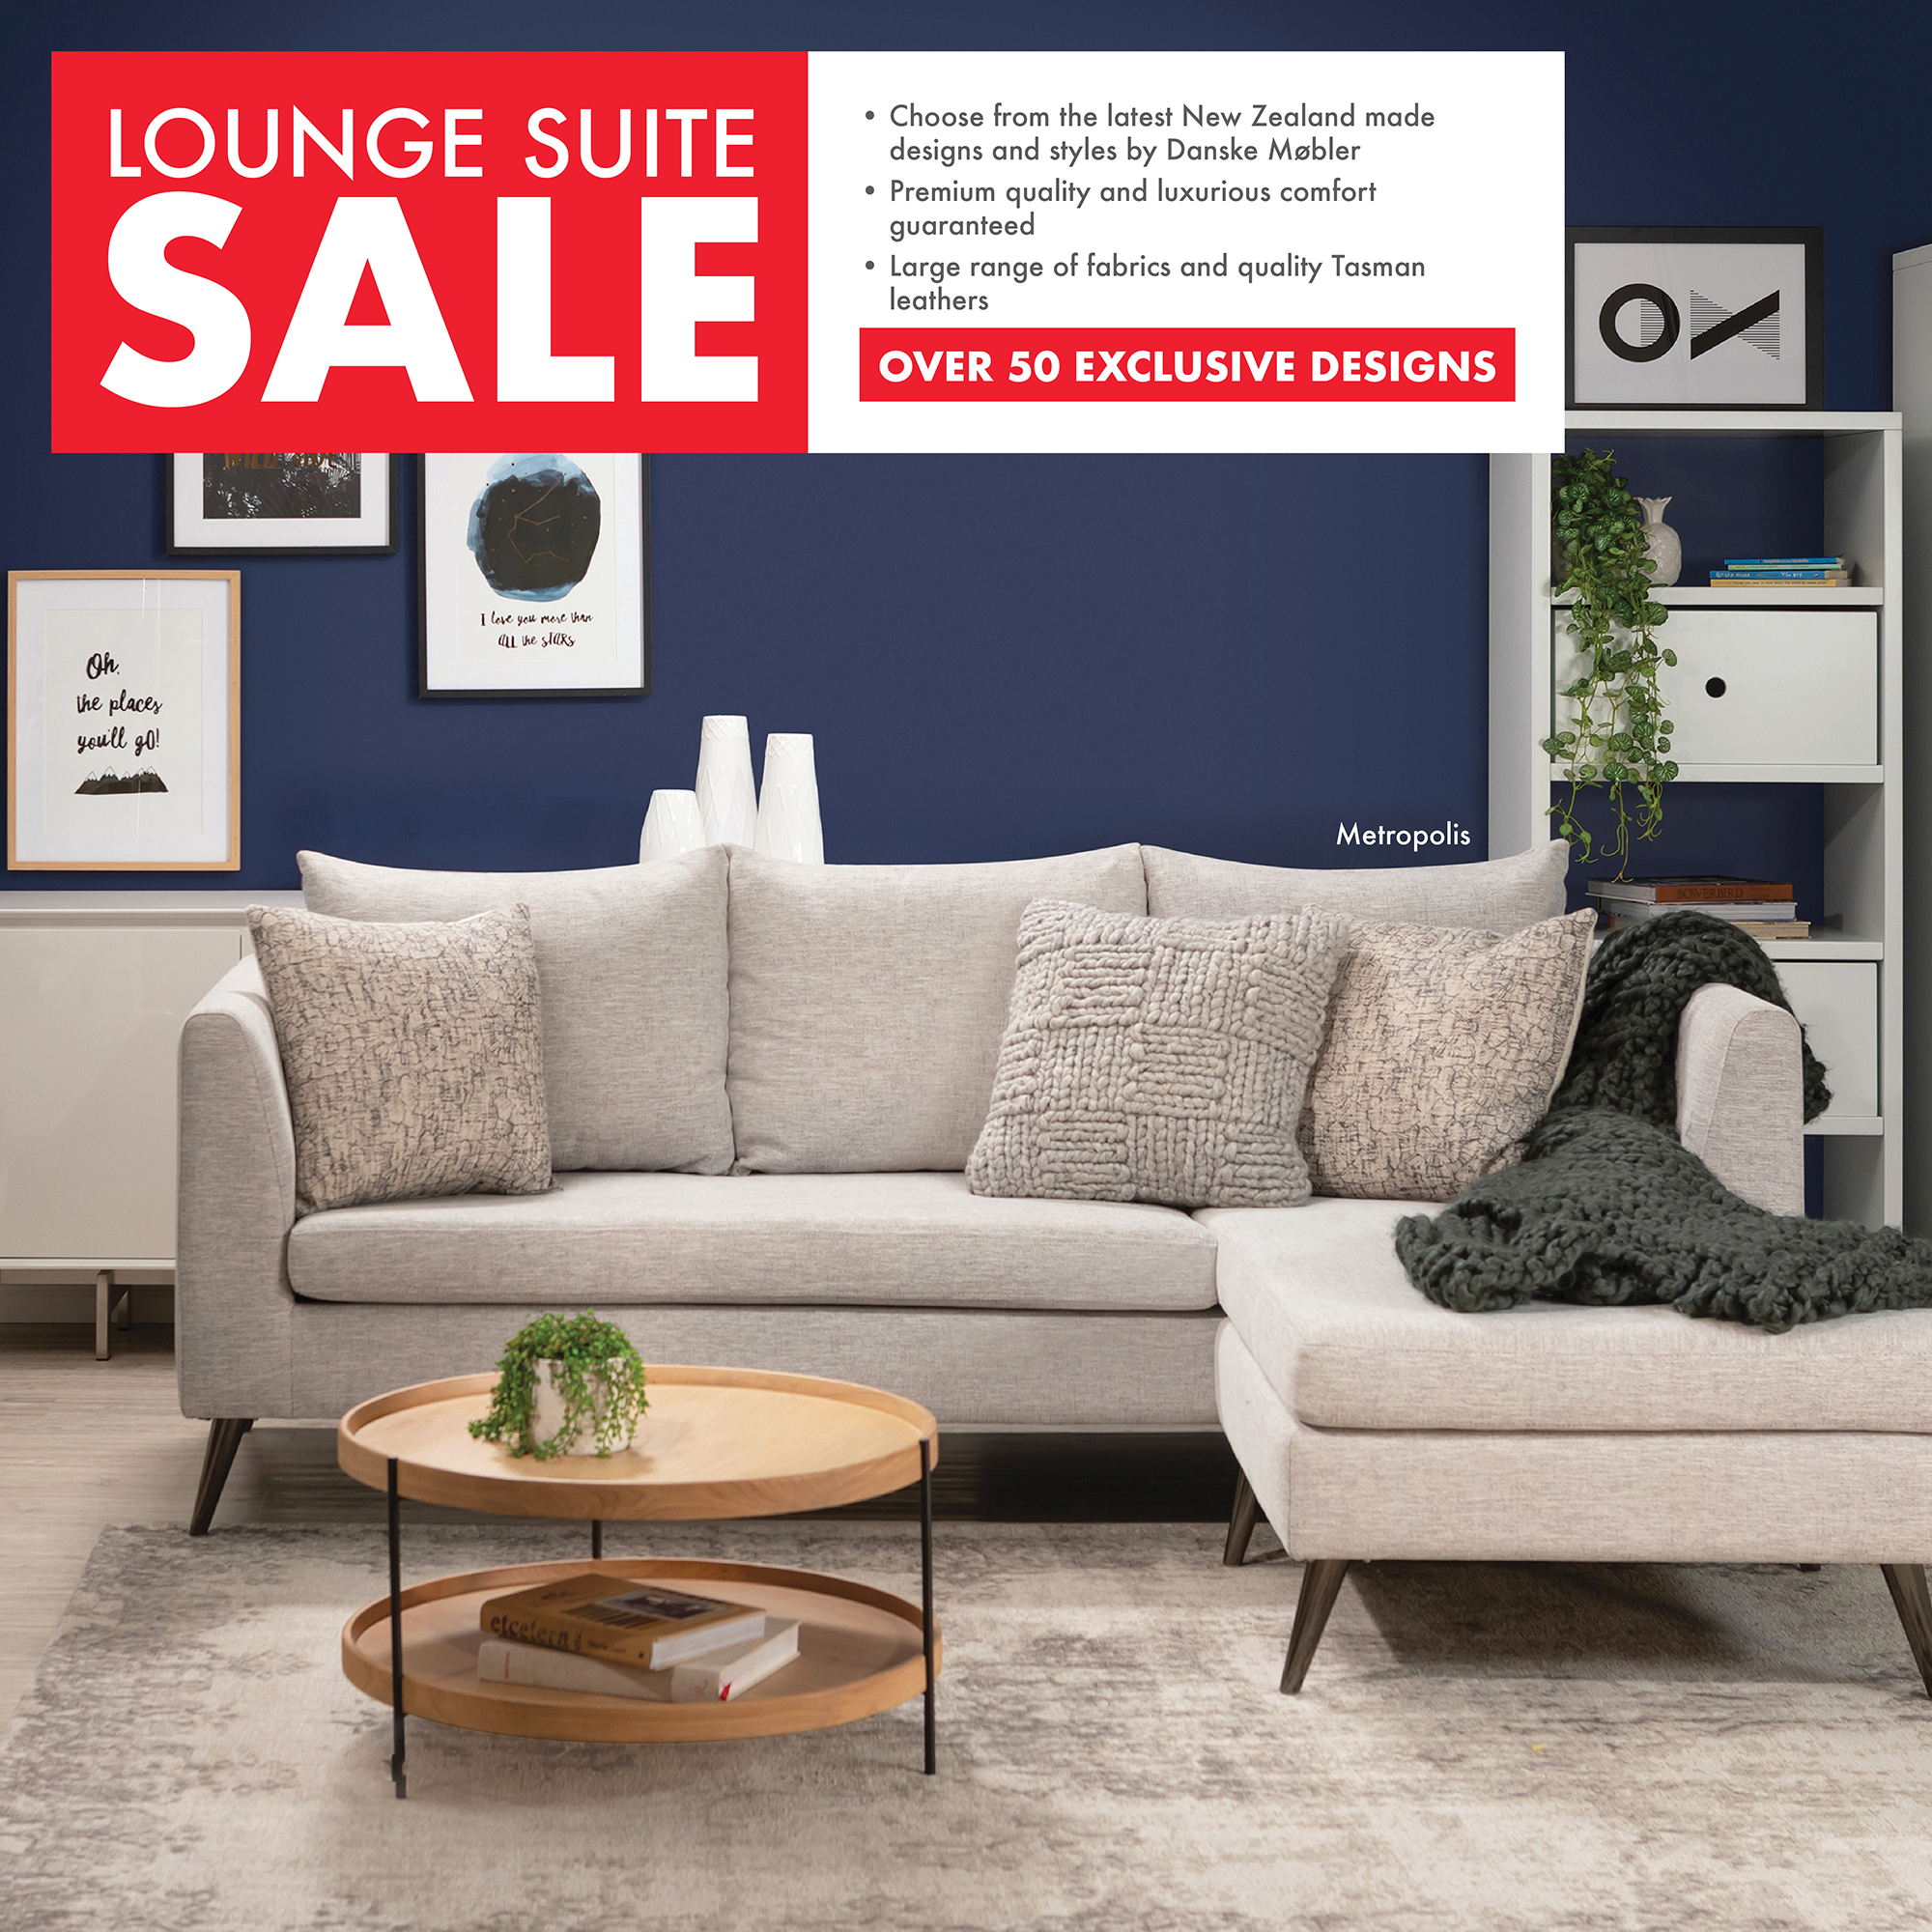 Lounge Suite Sale